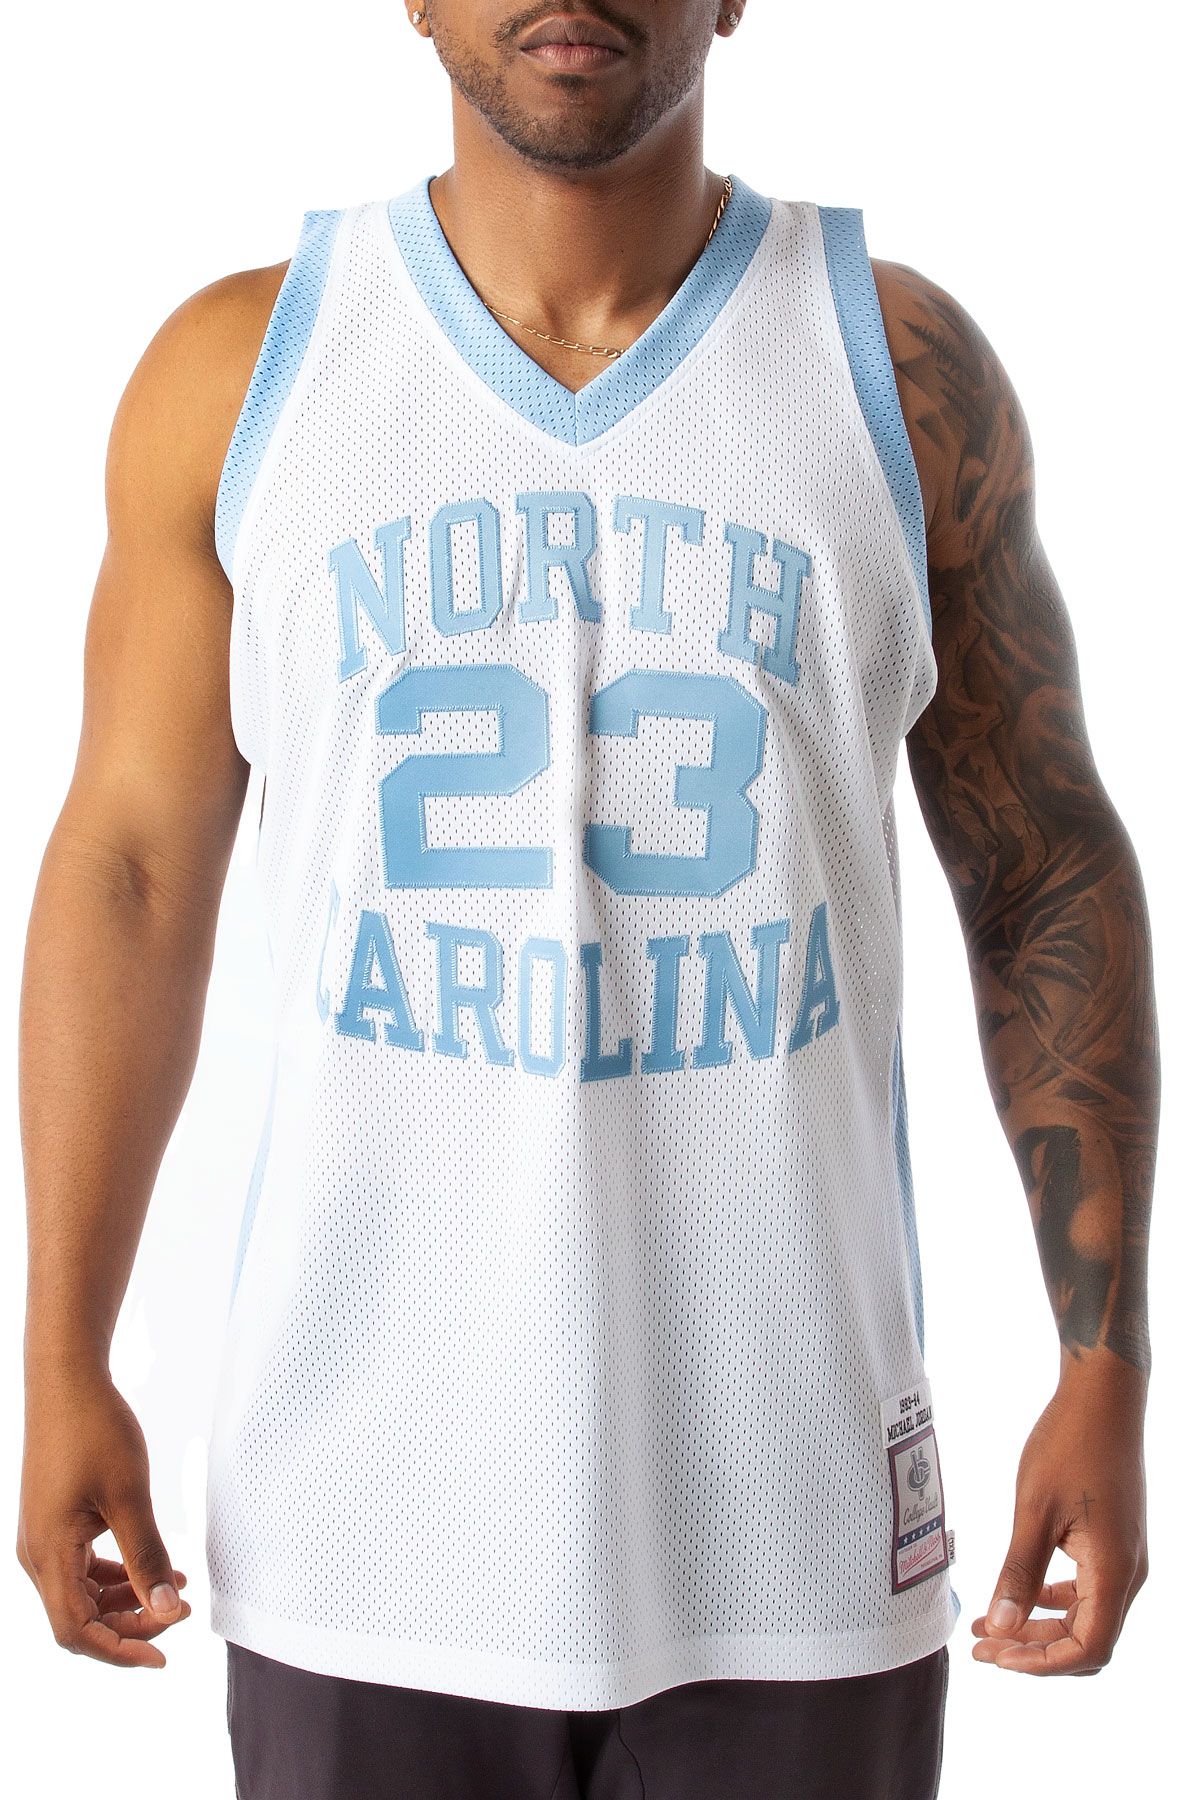 Mitchell & Ness NBA Authentic Jersey University Of North Carolina